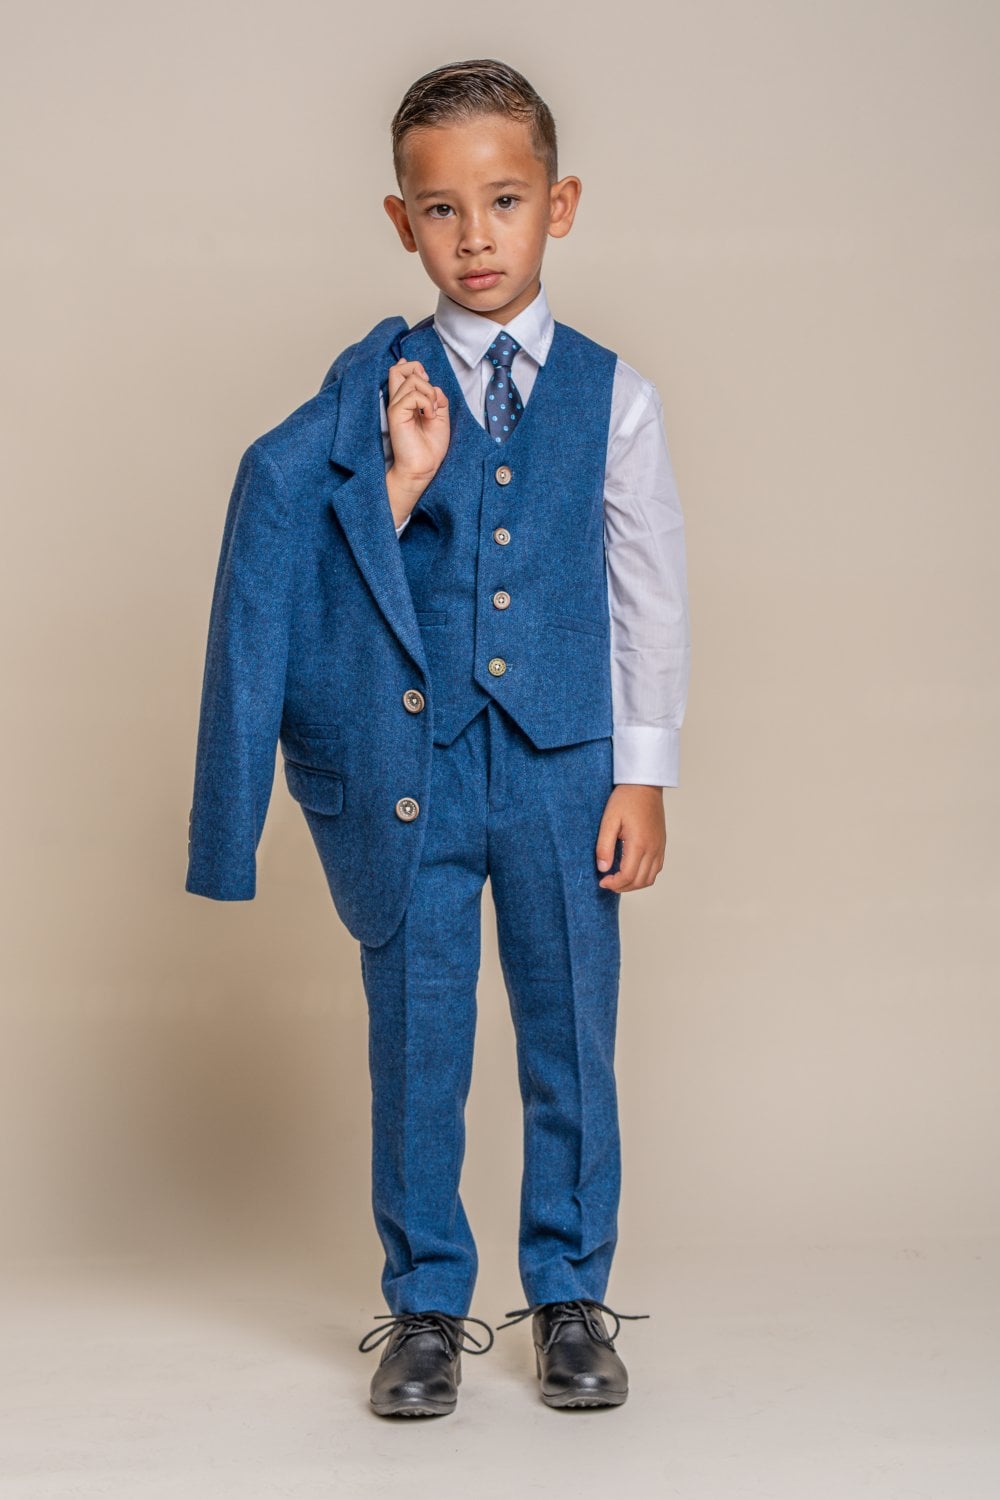 Orson Blue Tweed Boys 3 Piece Wedding Suit